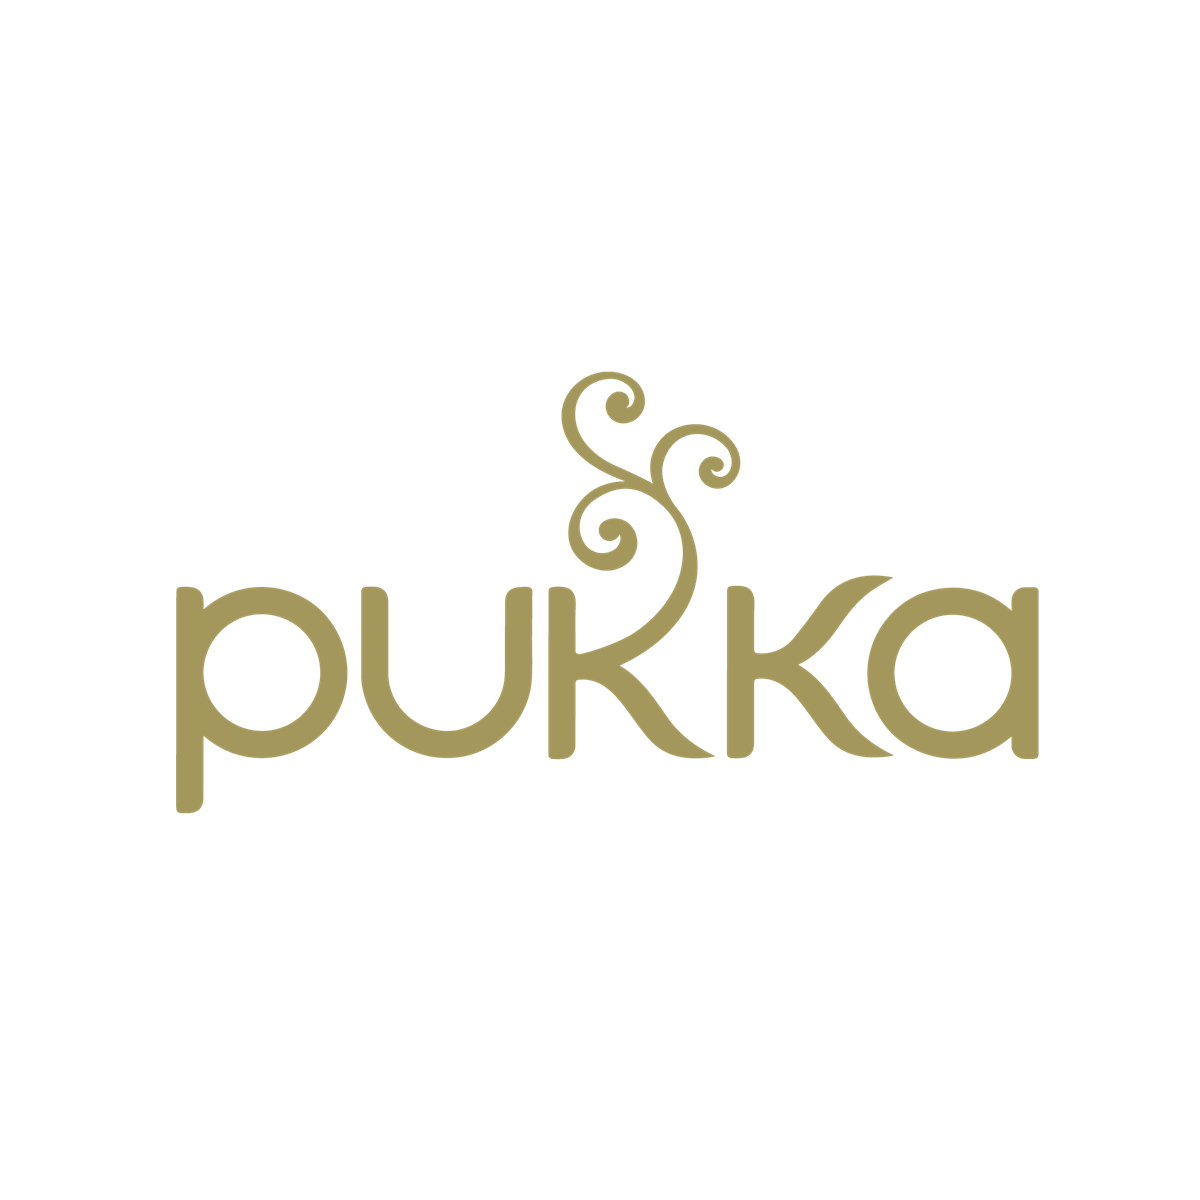 Where to Buy Pukka Tea